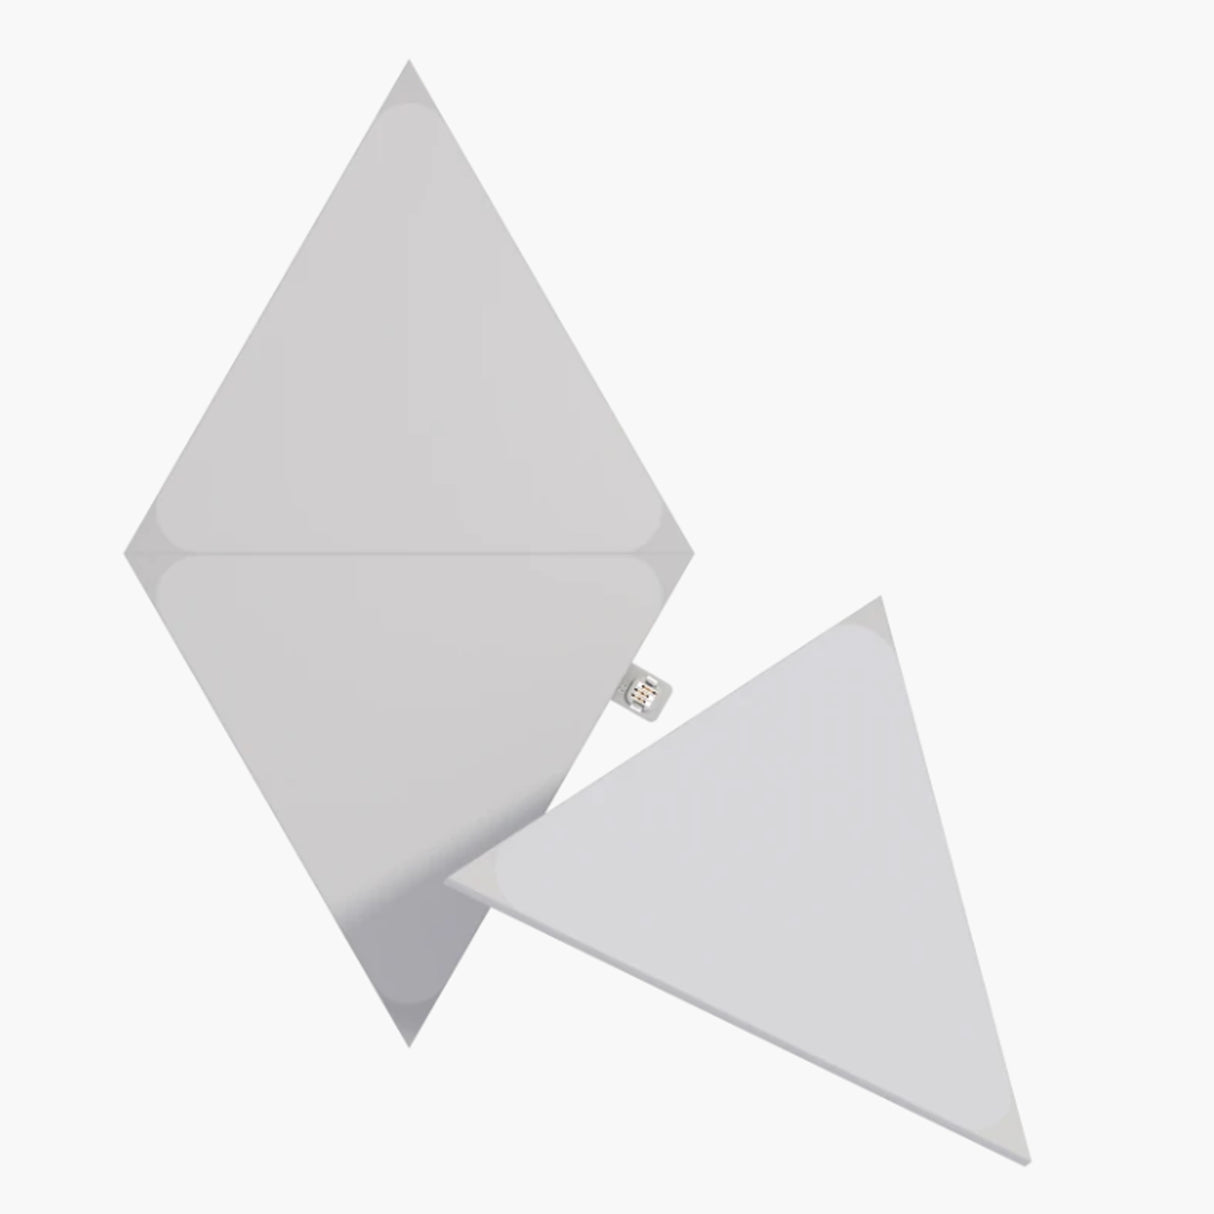 Nanoleaf Shapes Triangles Expansion Pack (3 Panels)